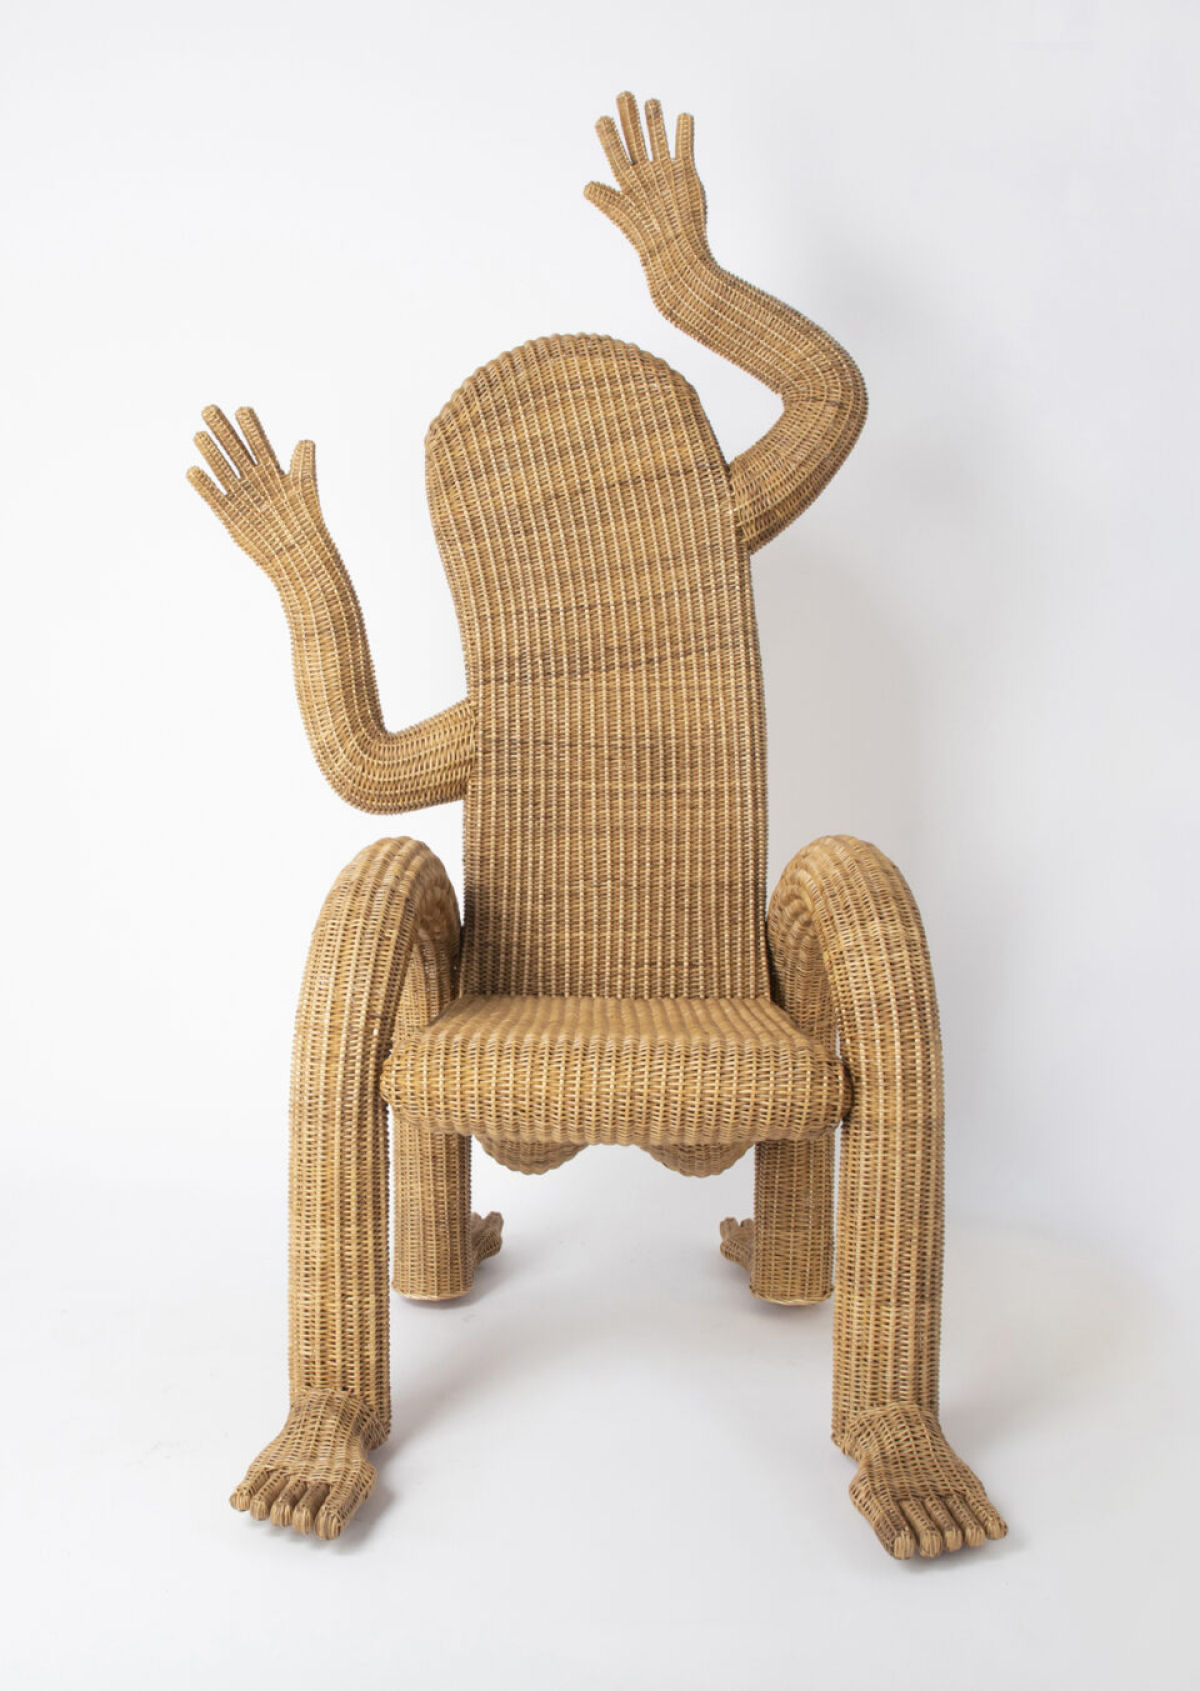 Cadeiras divertidas personificam os humanos que se sentam nelas 02